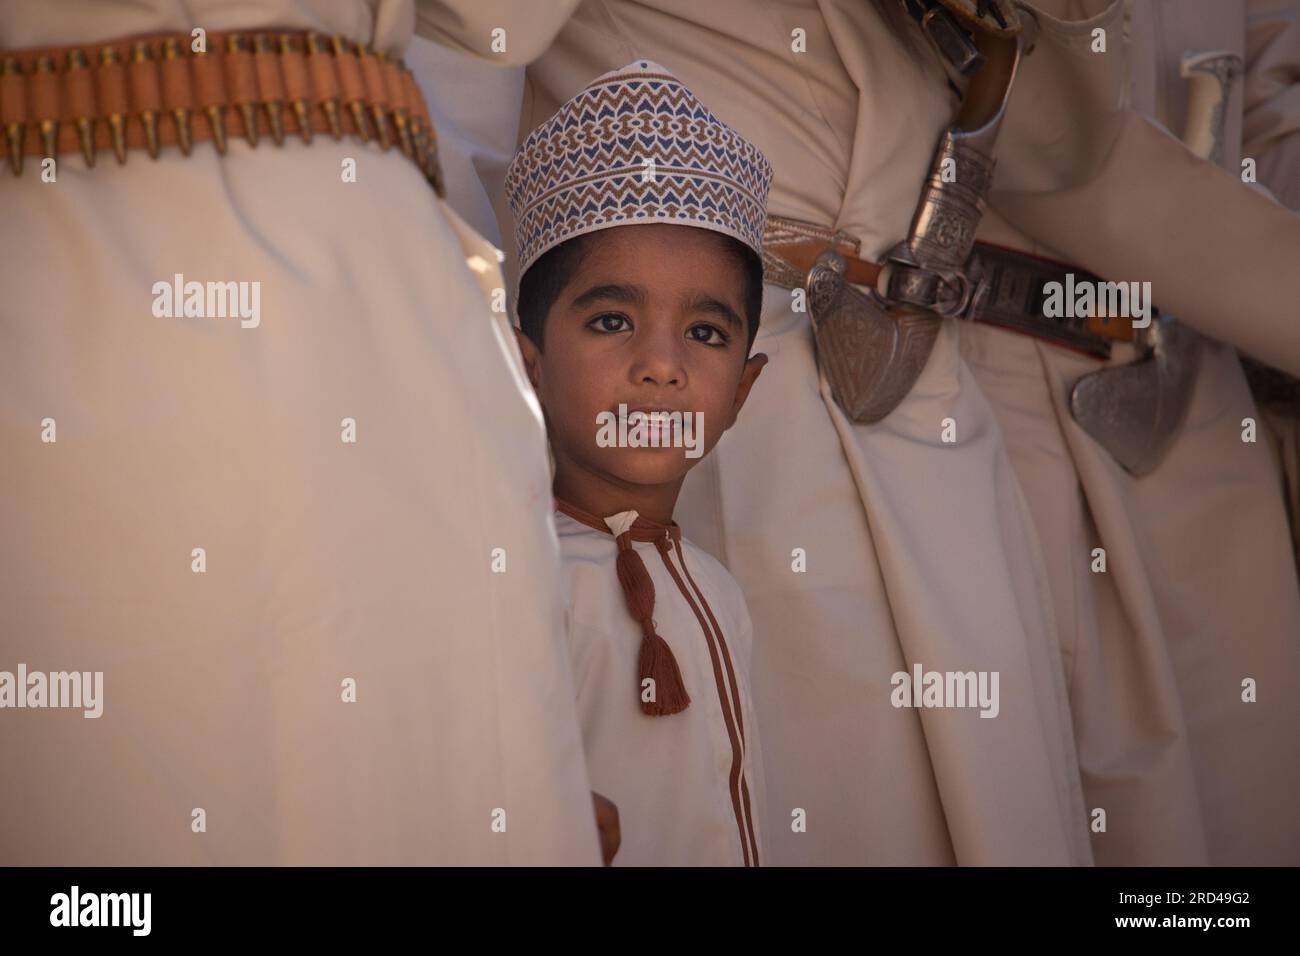 Ein Junge in einer traditionellen omanischen Dishdasha und einem Zanzibari-Hut zieht sich aus einer Menge erwachsener Männer hervor, während sie einen Tanz vorführen. Stockfoto